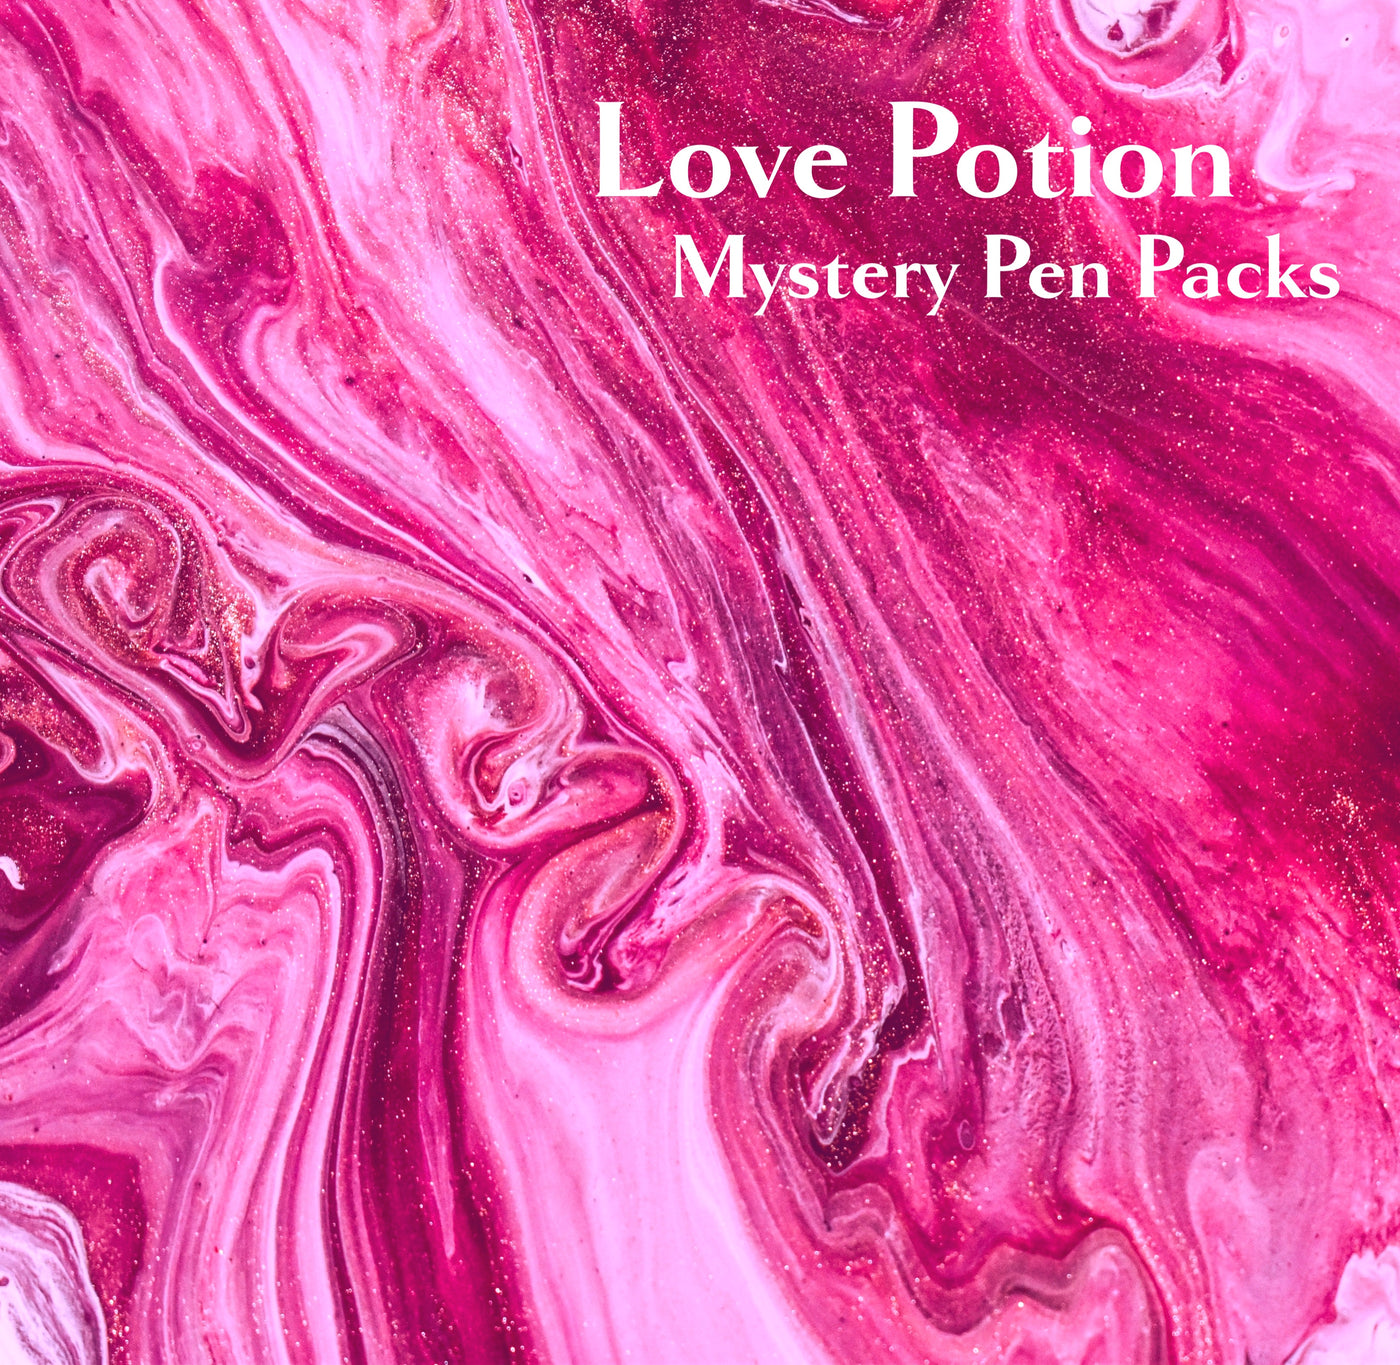 Love Potion Mystery Pen Packs